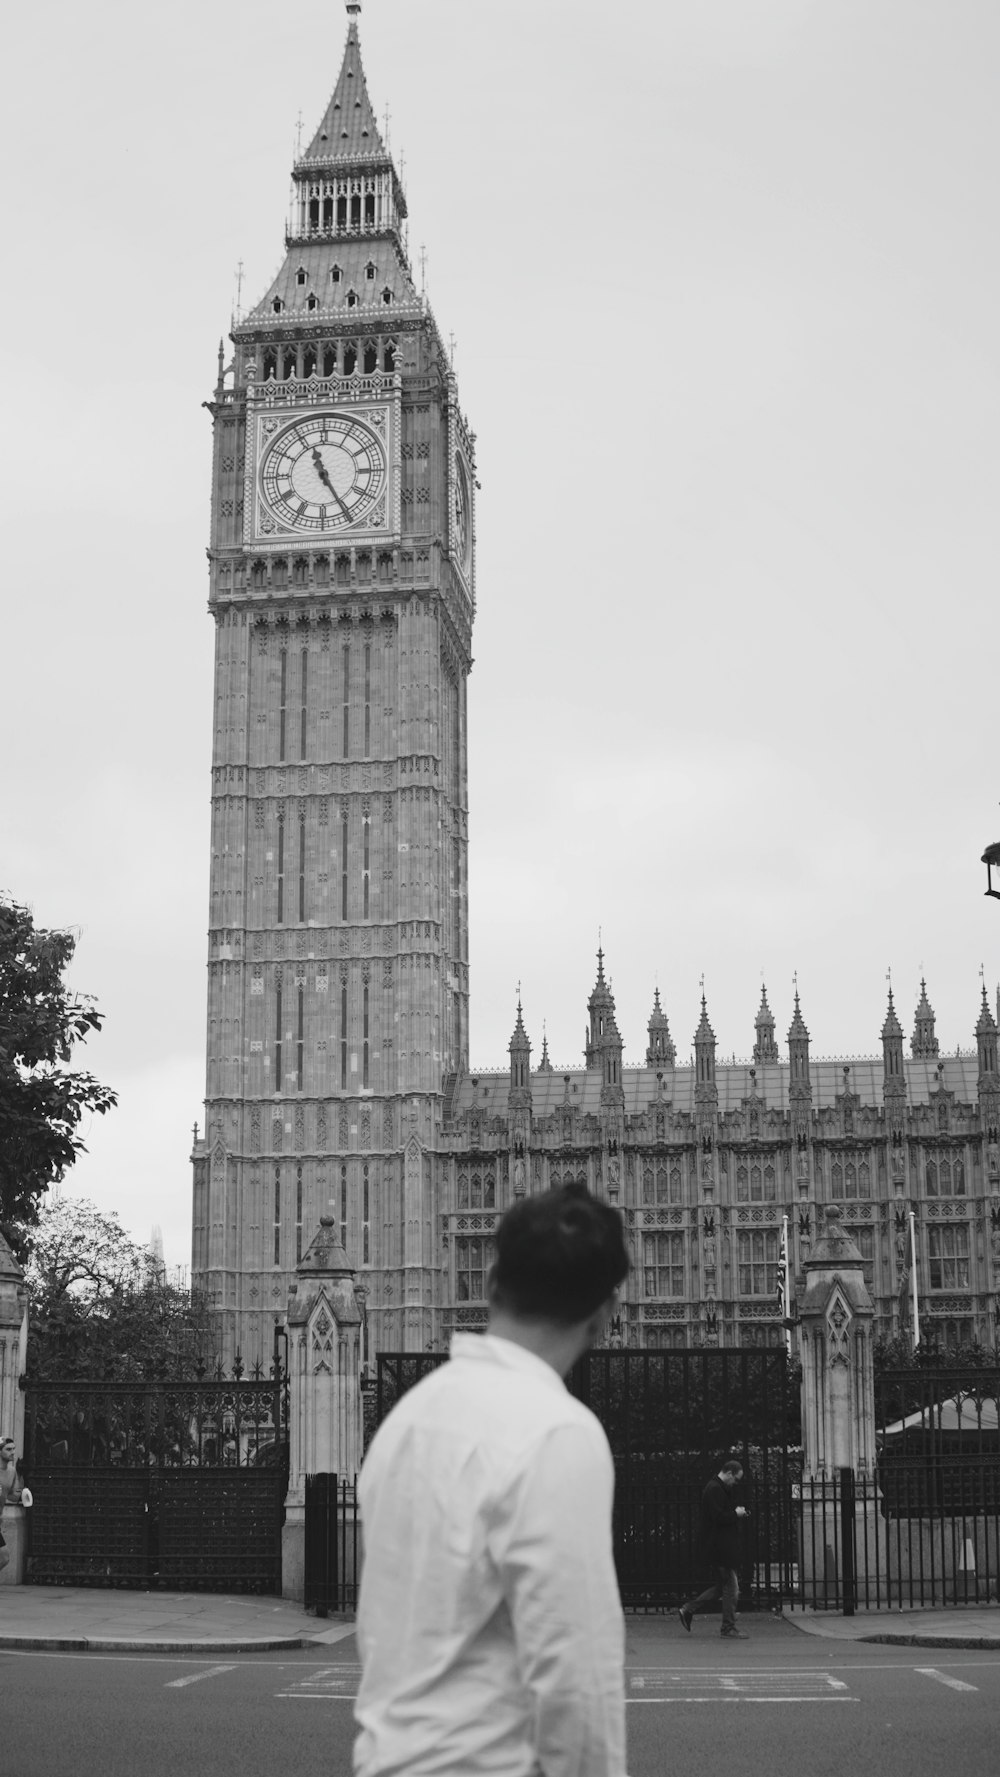 un uomo in piedi davanti a un'alta torre dell'orologio